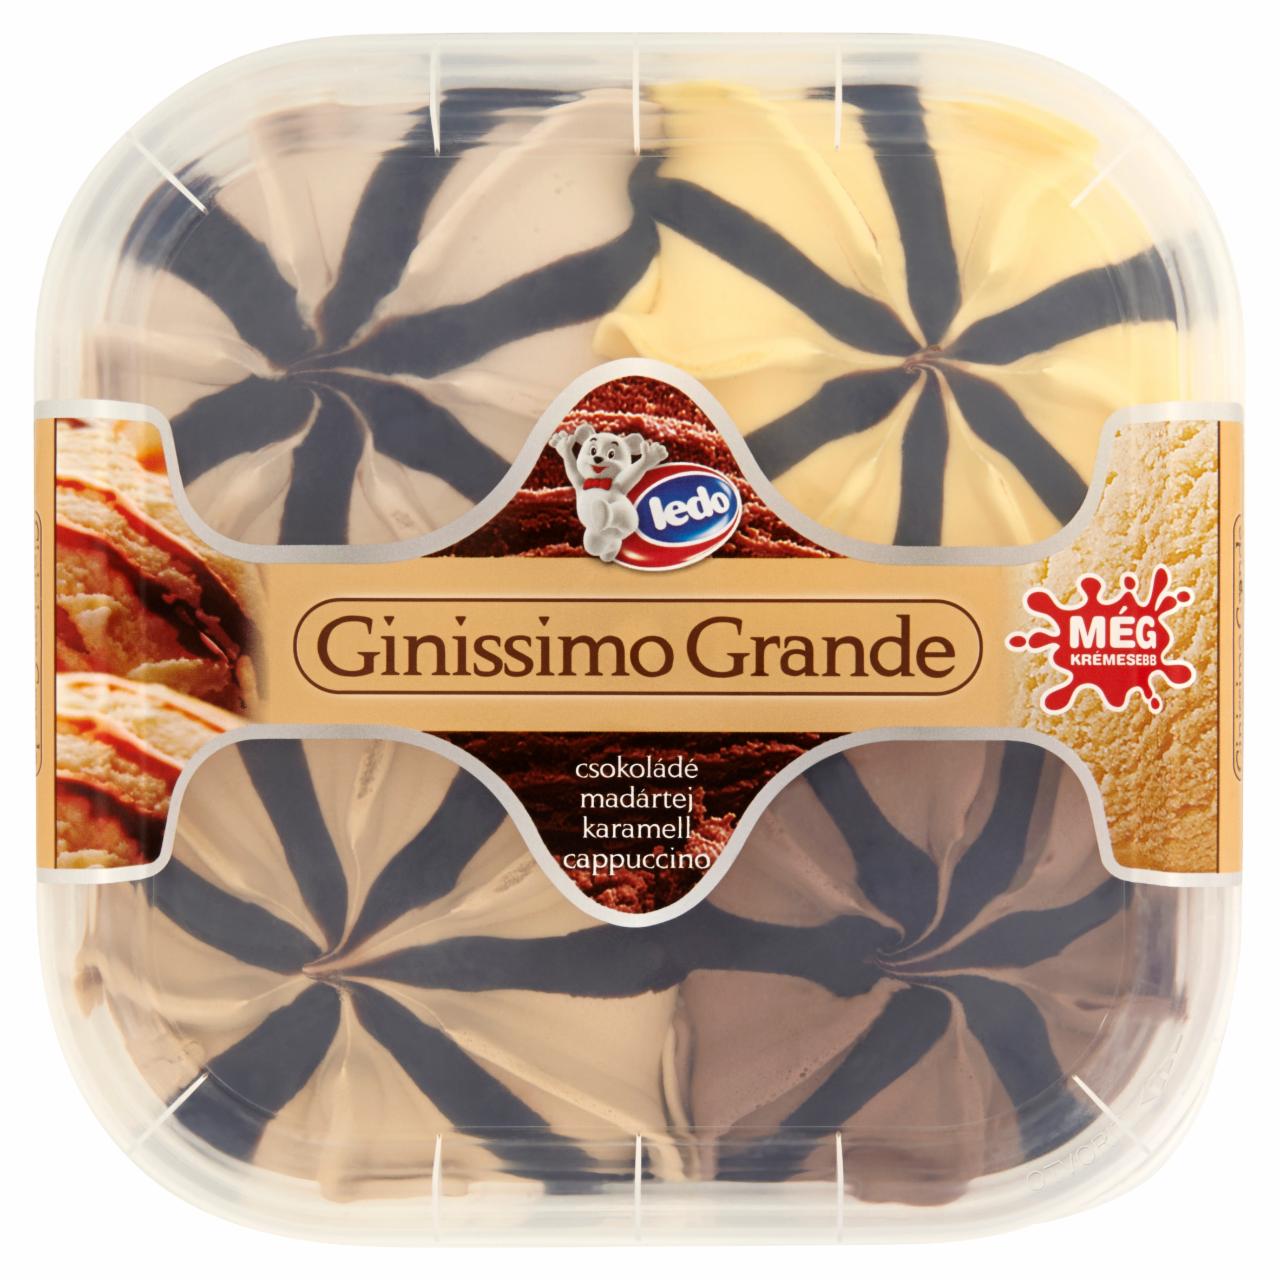 Képek - Ledo Ginissimo Grande karamell-csoki-cappuccino-madártej ízű jégkrém 865 g